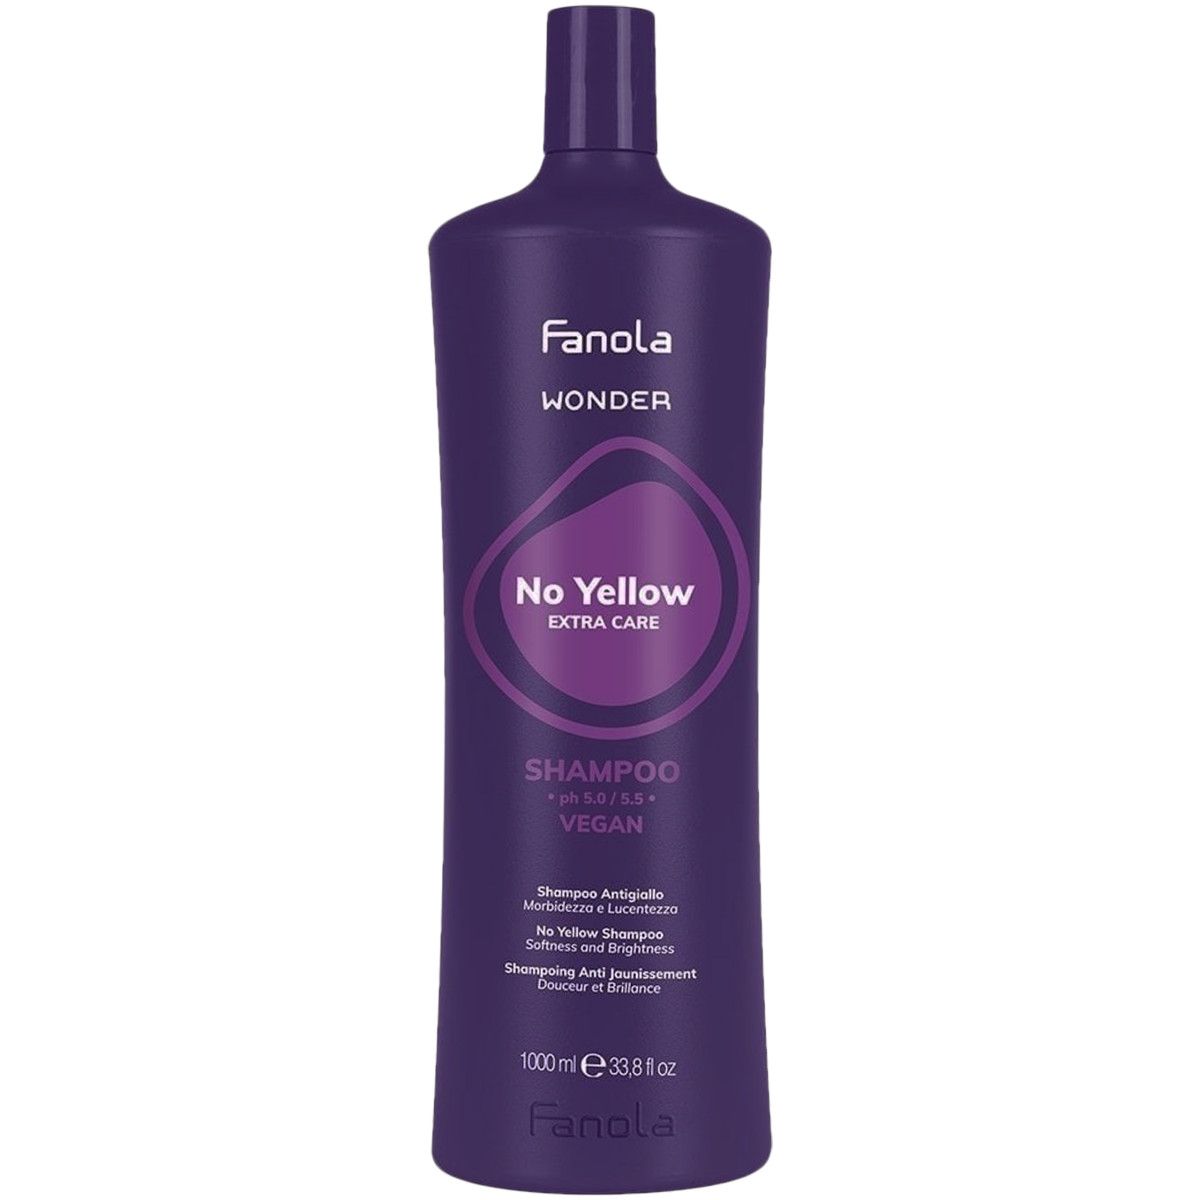 Fanola Wonder No Yellow Shampoo - szampon do włosów blond, 1000ml